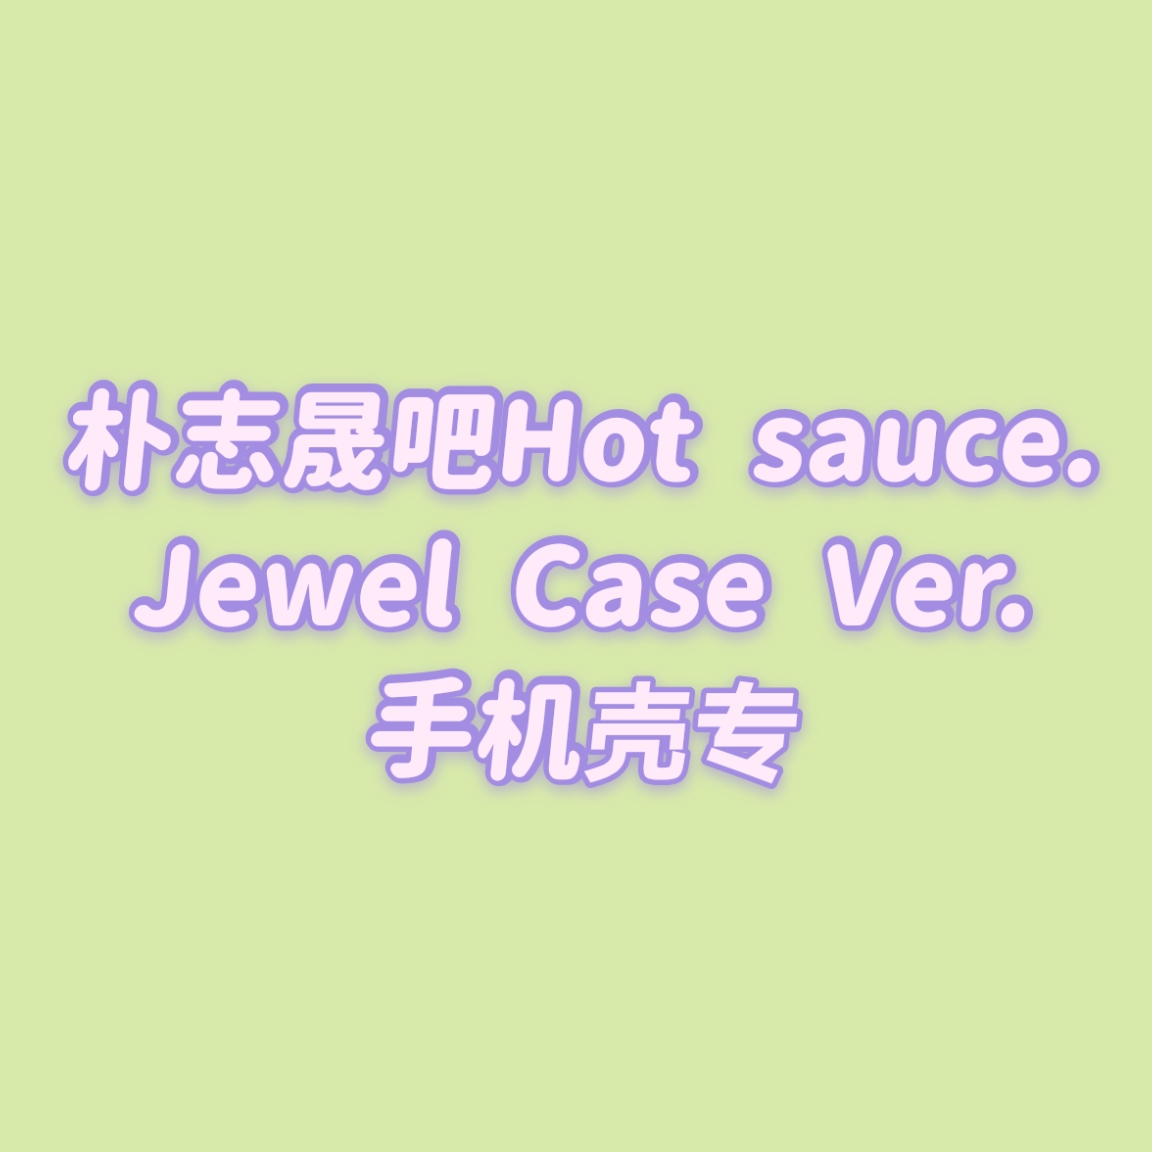 [全款 手机壳包邮专] [买多张发不同版本] NCT DREAM - Album Vol.1 [맛 (Hot Sauce)] (Jewel Case Ver.) (随机版本)_朴志晟吧_ParkJiSungBar